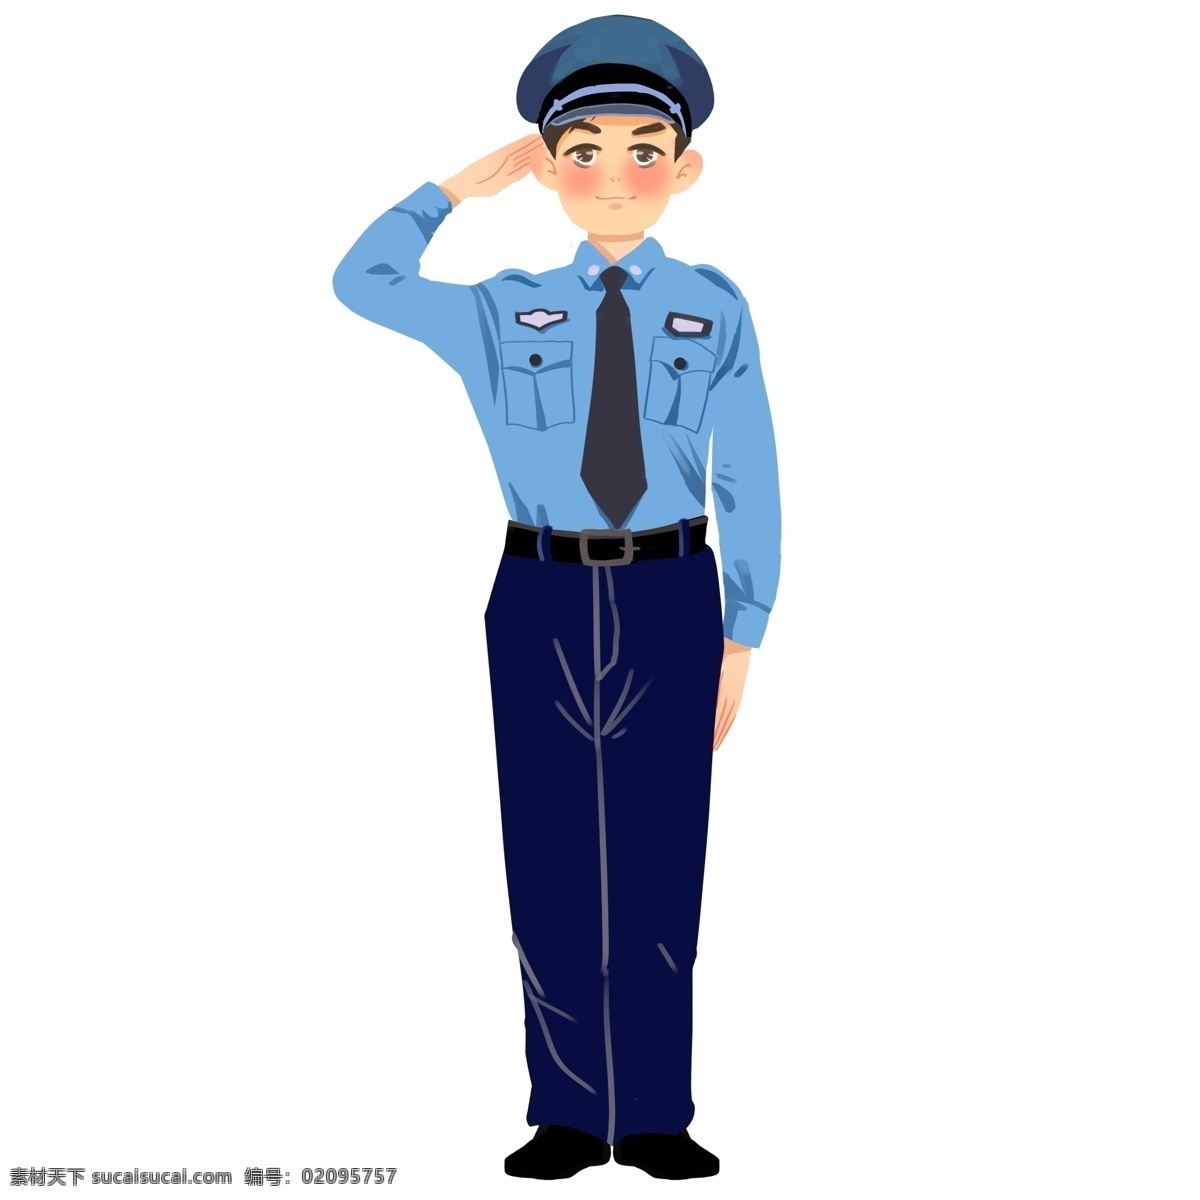 卡通 可爱 小 警察 人物 插画 敬礼 站立 男生